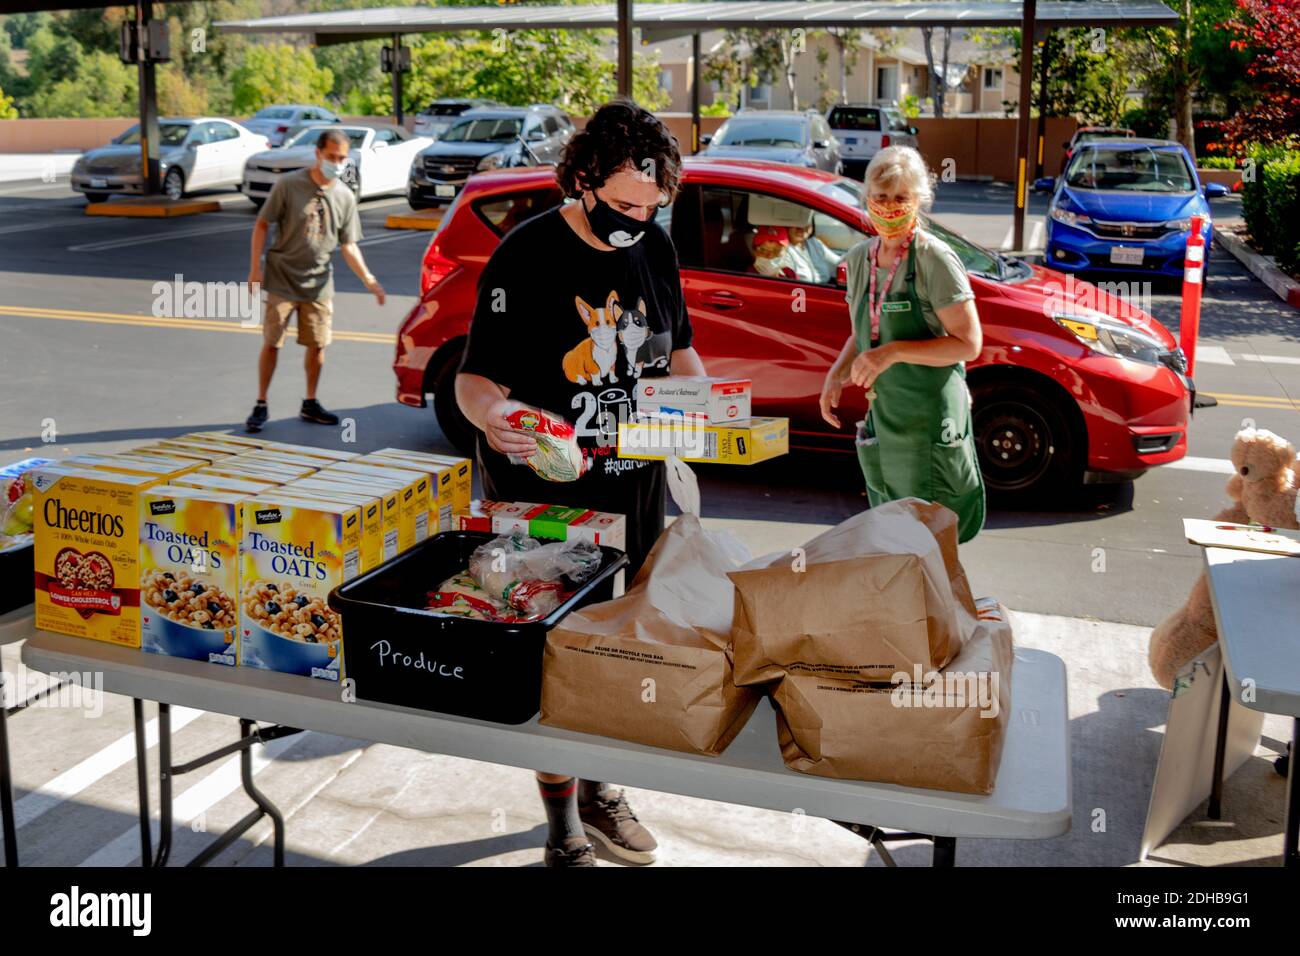 Una despensa de alimentos de caridad en una iglesia católica del sur de California suministra alimentos a las personas necesitadas que utilizan la campaña a través de la distribución. Nota máscaras debido a la pandemia del coronavirus. Foto de stock